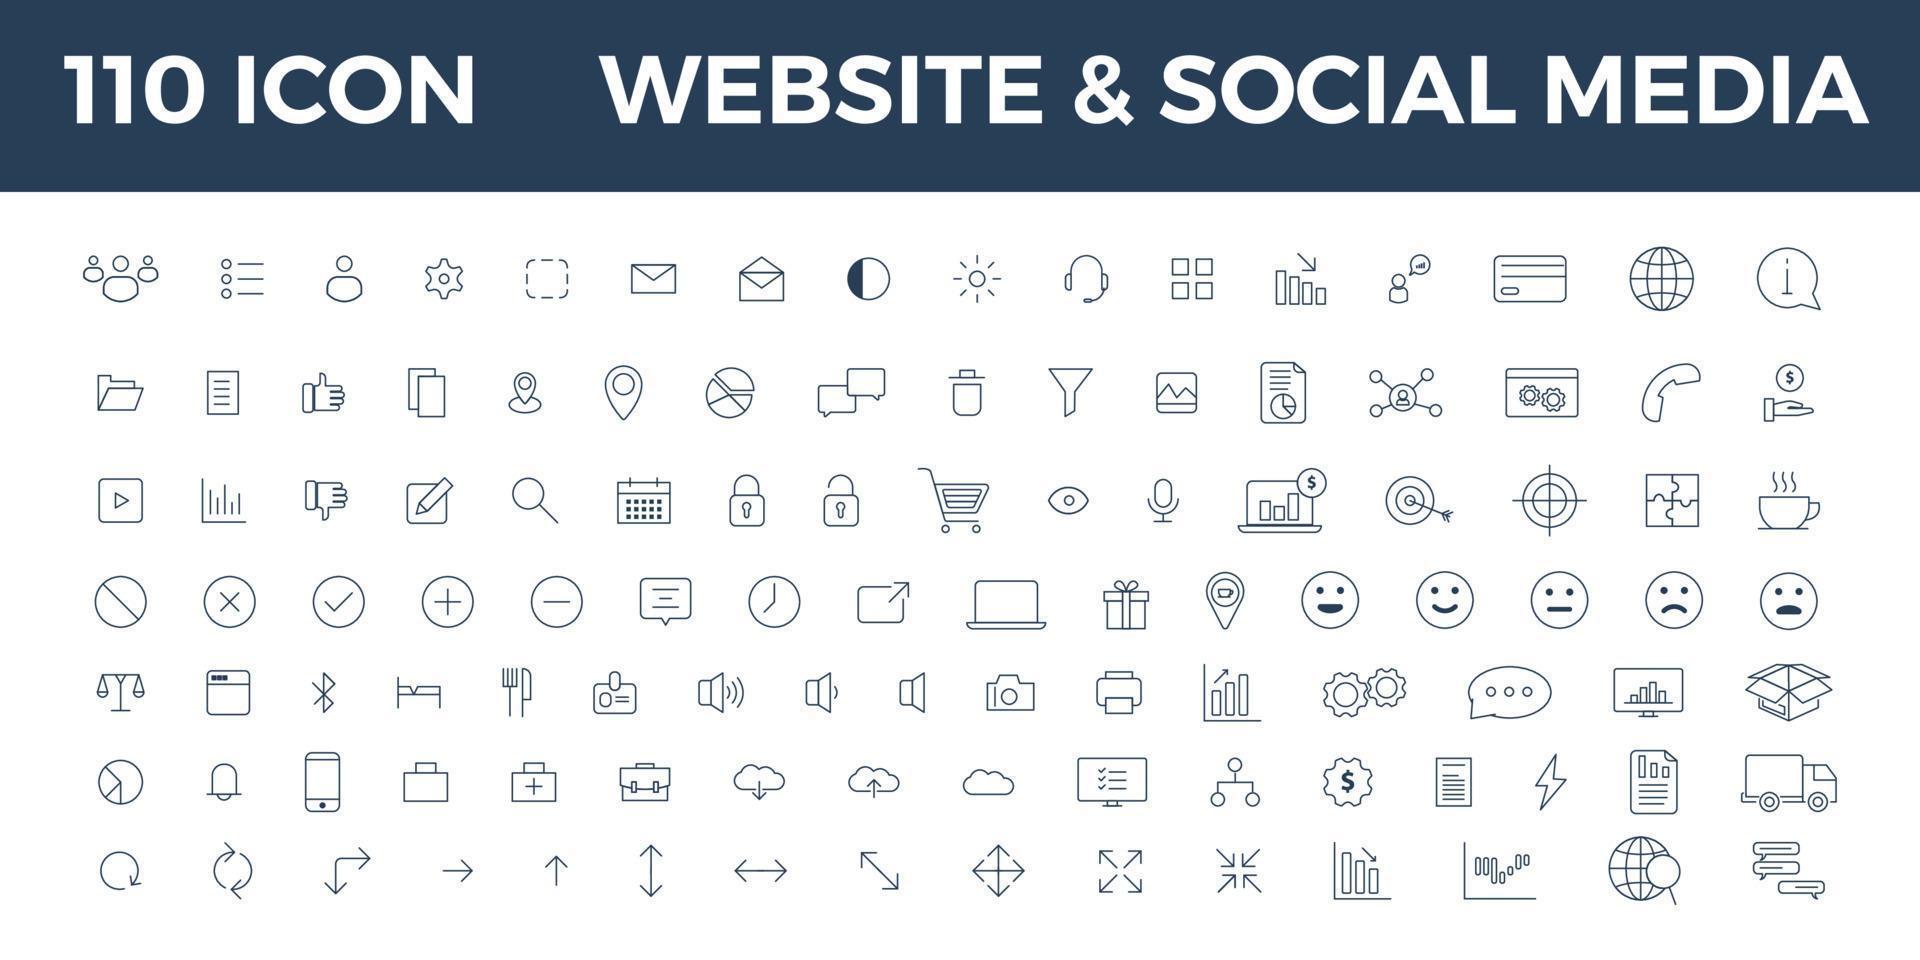 site de 110 ícones e conjunto completo de mídia social vetor